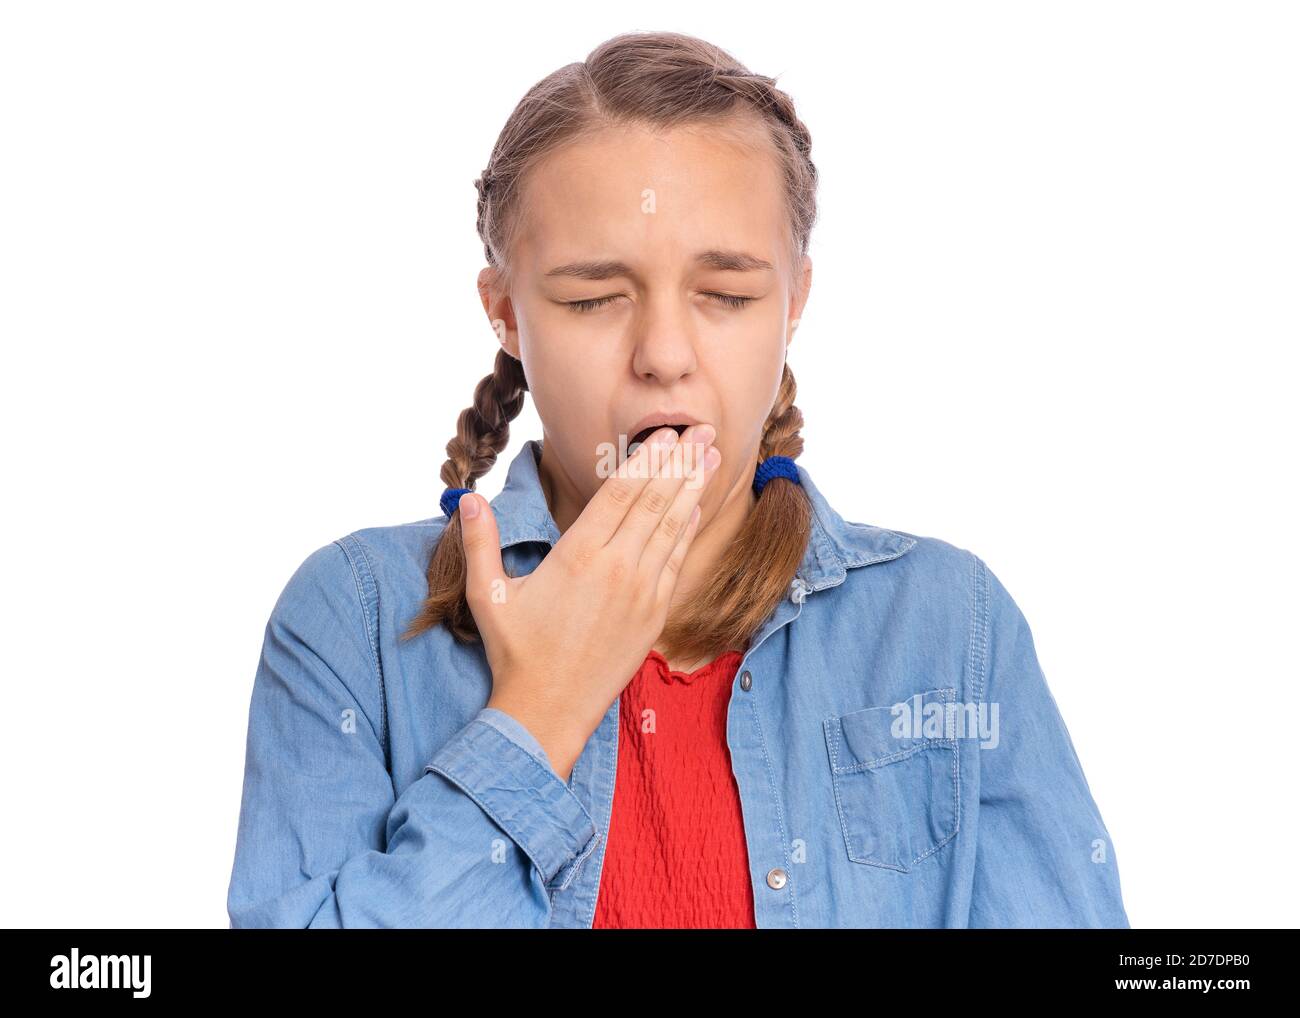 Schöne Teenager-Mädchen gähnt über ihren Mund mit der Hand, isoliert auf weißem Hintergrund Stockfoto